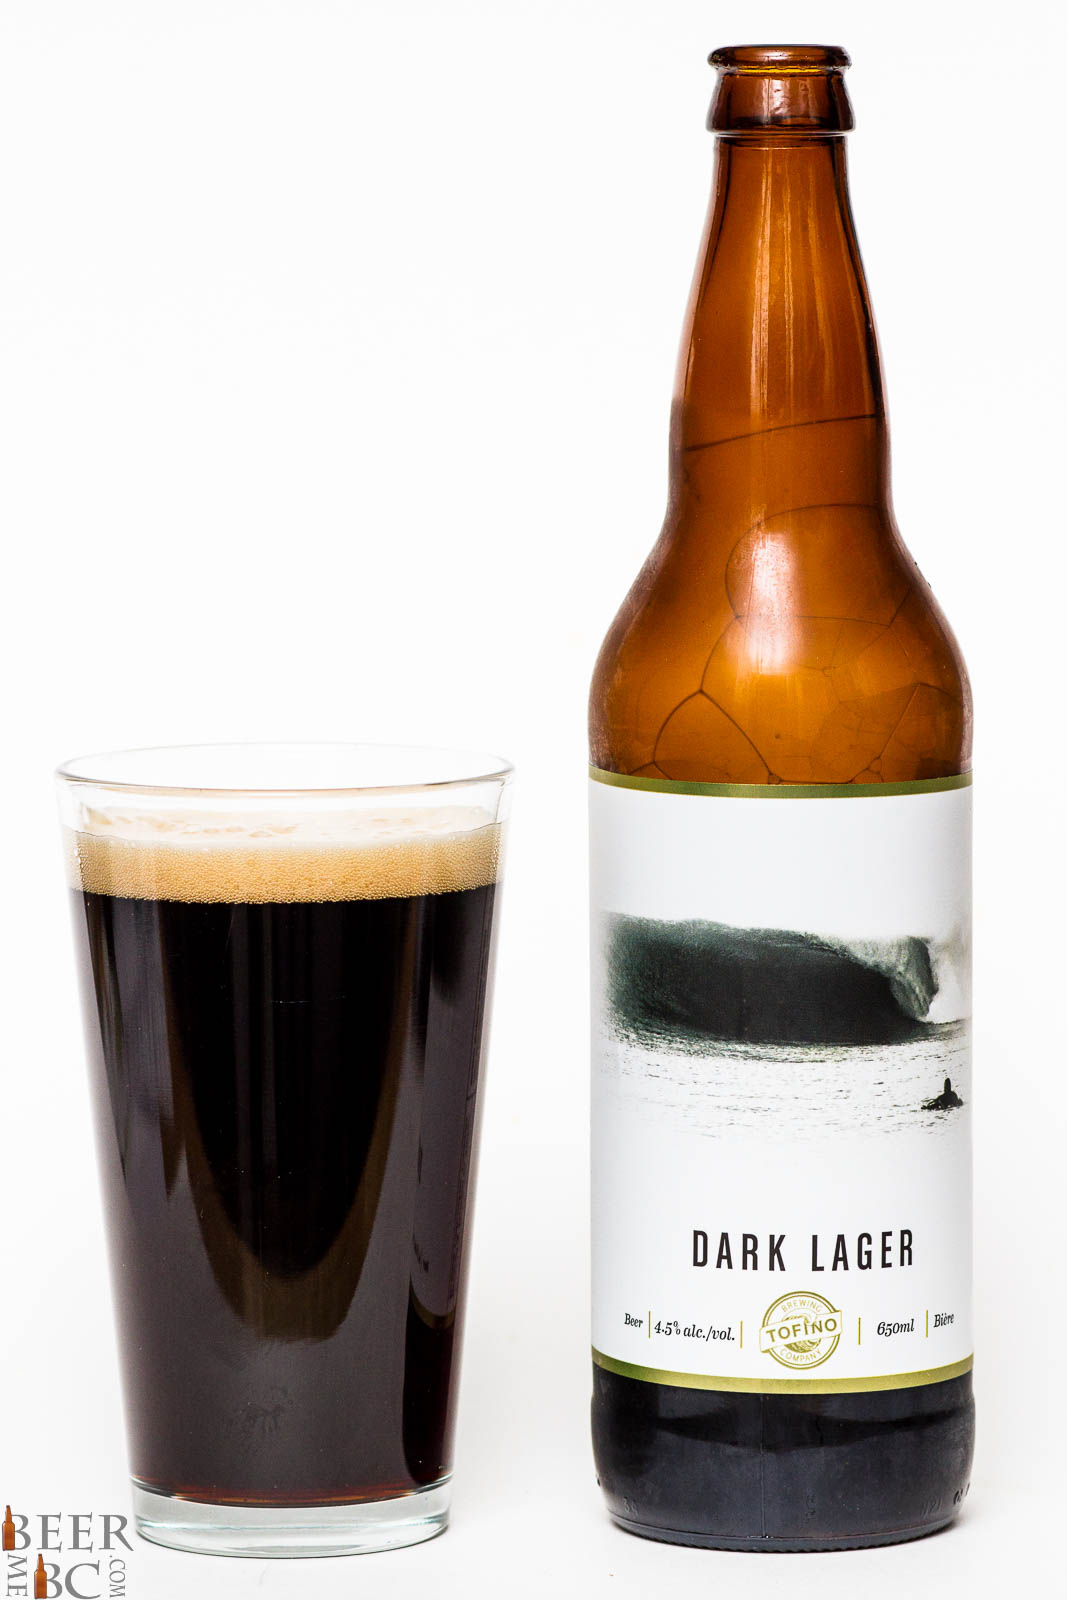 Lager beer. Тёмный лагер (Dark Lager). Дарк лагер пиво. Пиво Бирштайн лагер. Stakkgast Lager пиво.